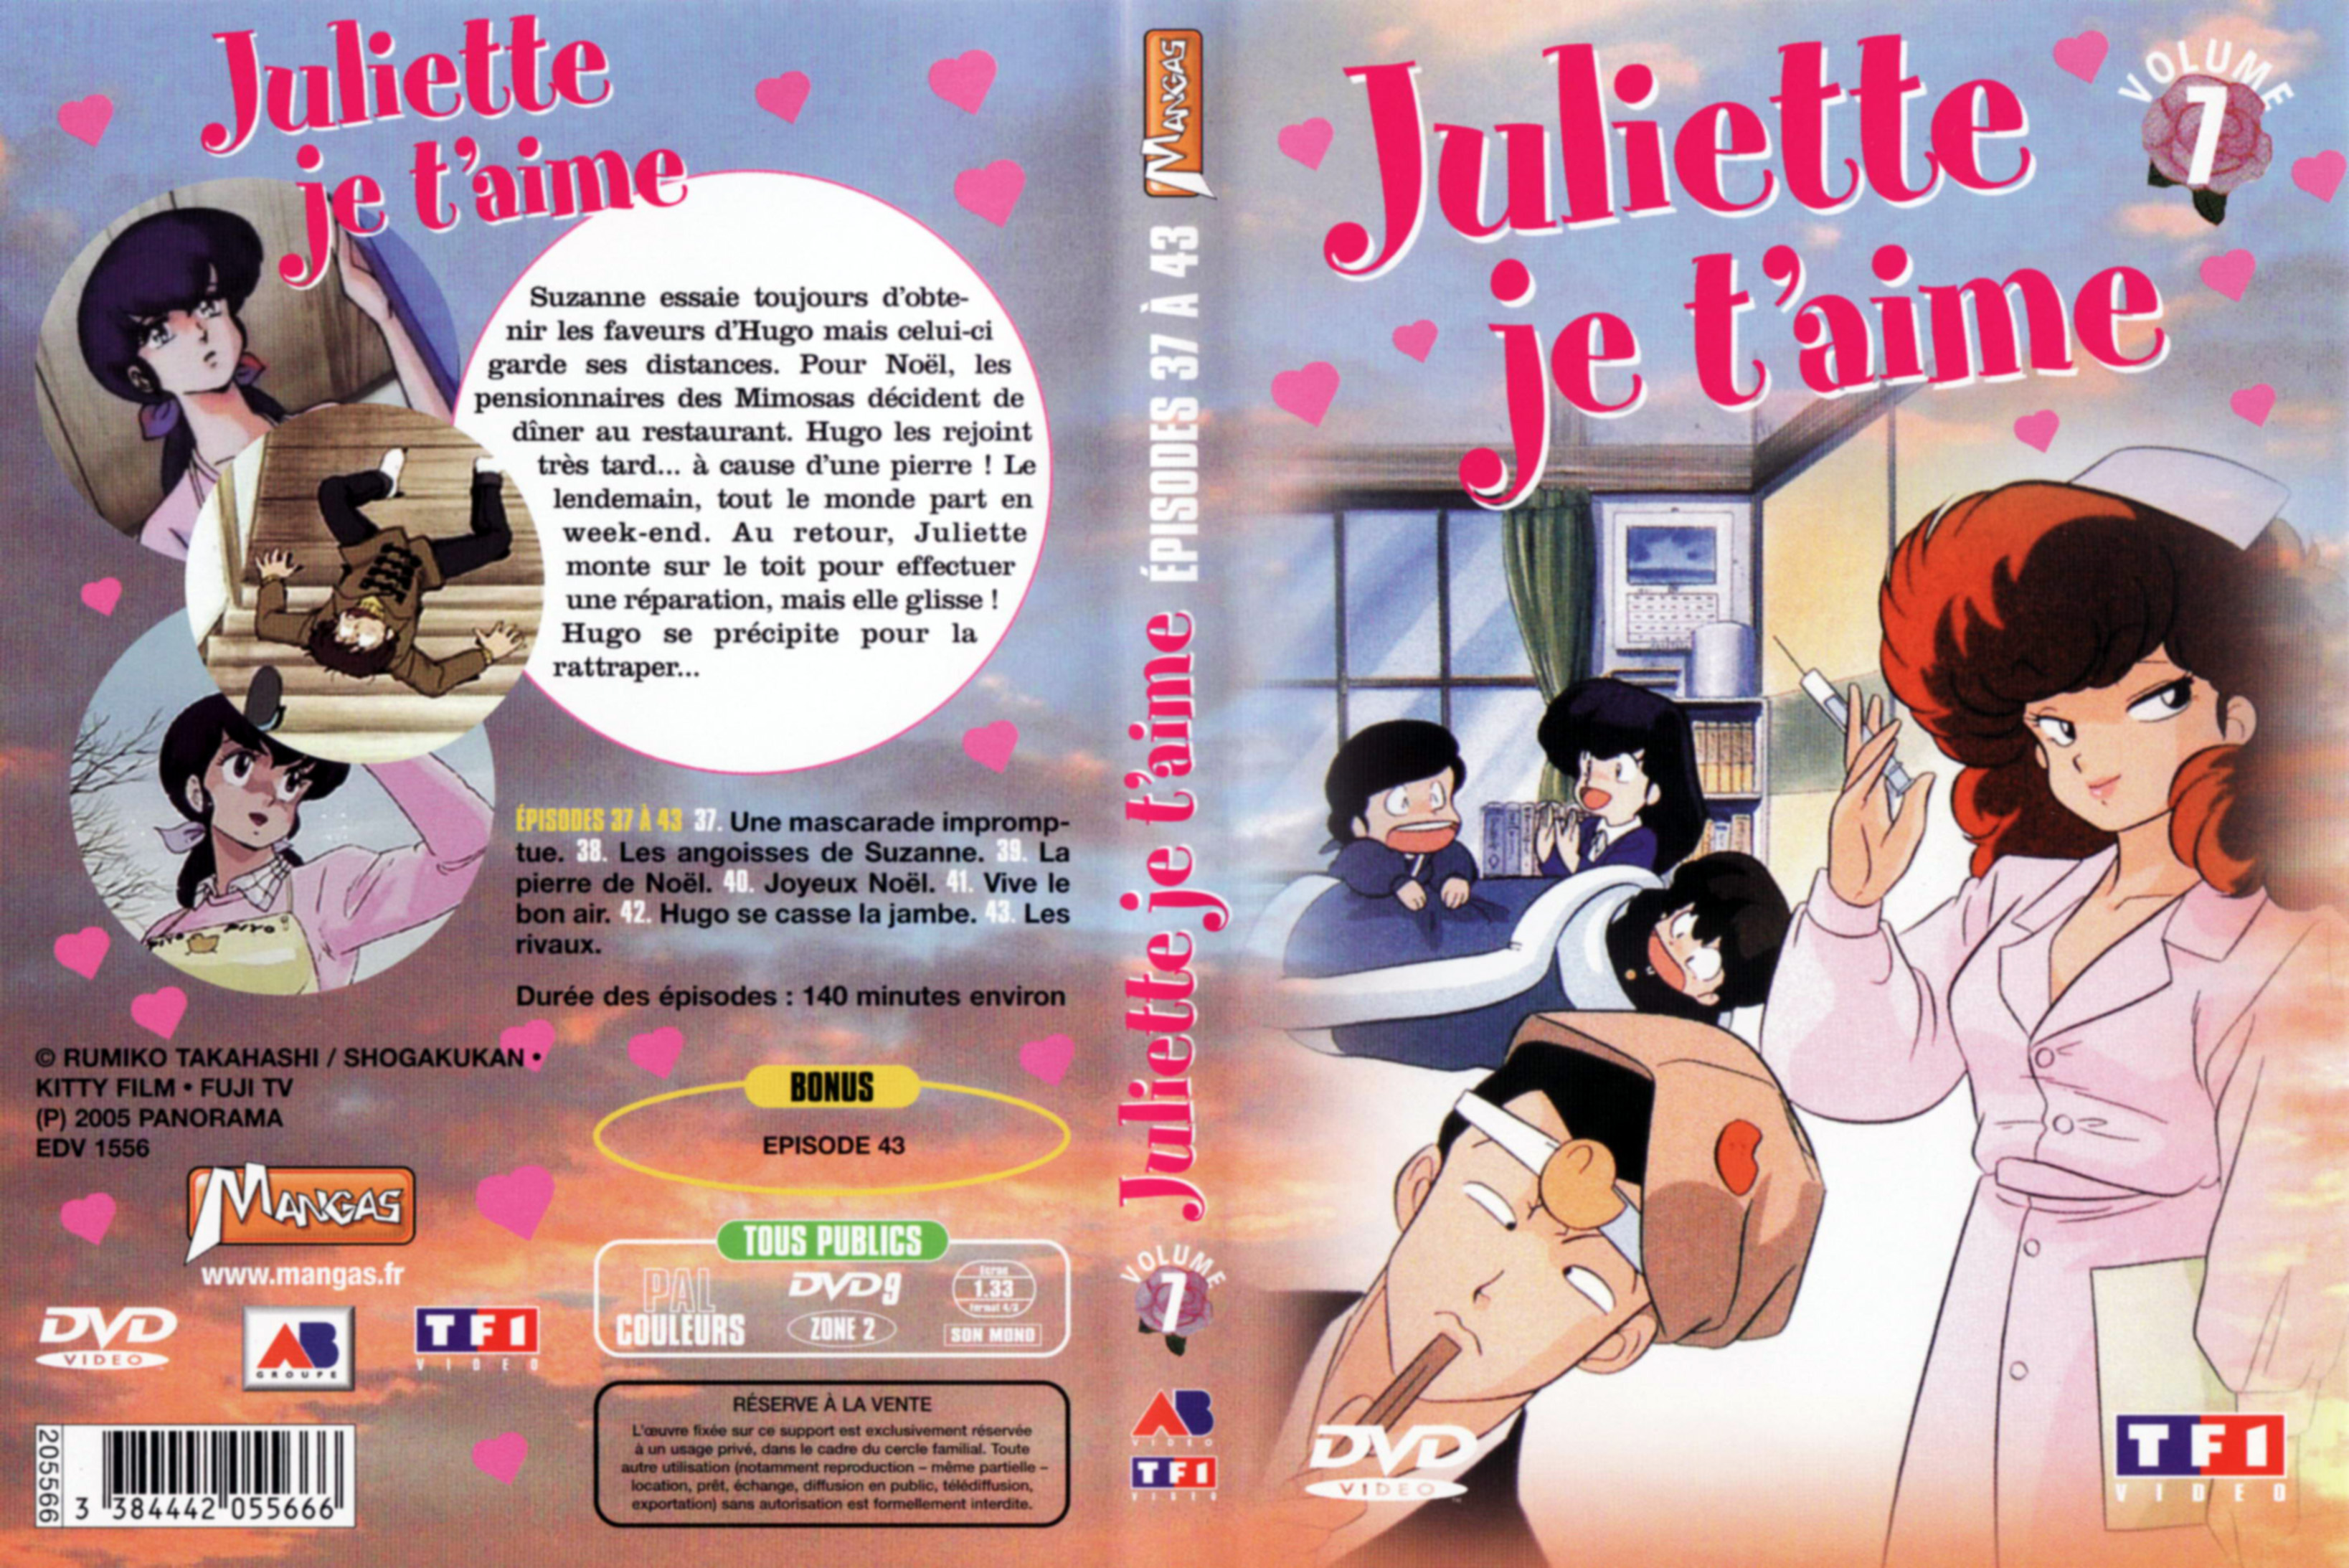 Jaquette DVD Juliette je t aime vol 07